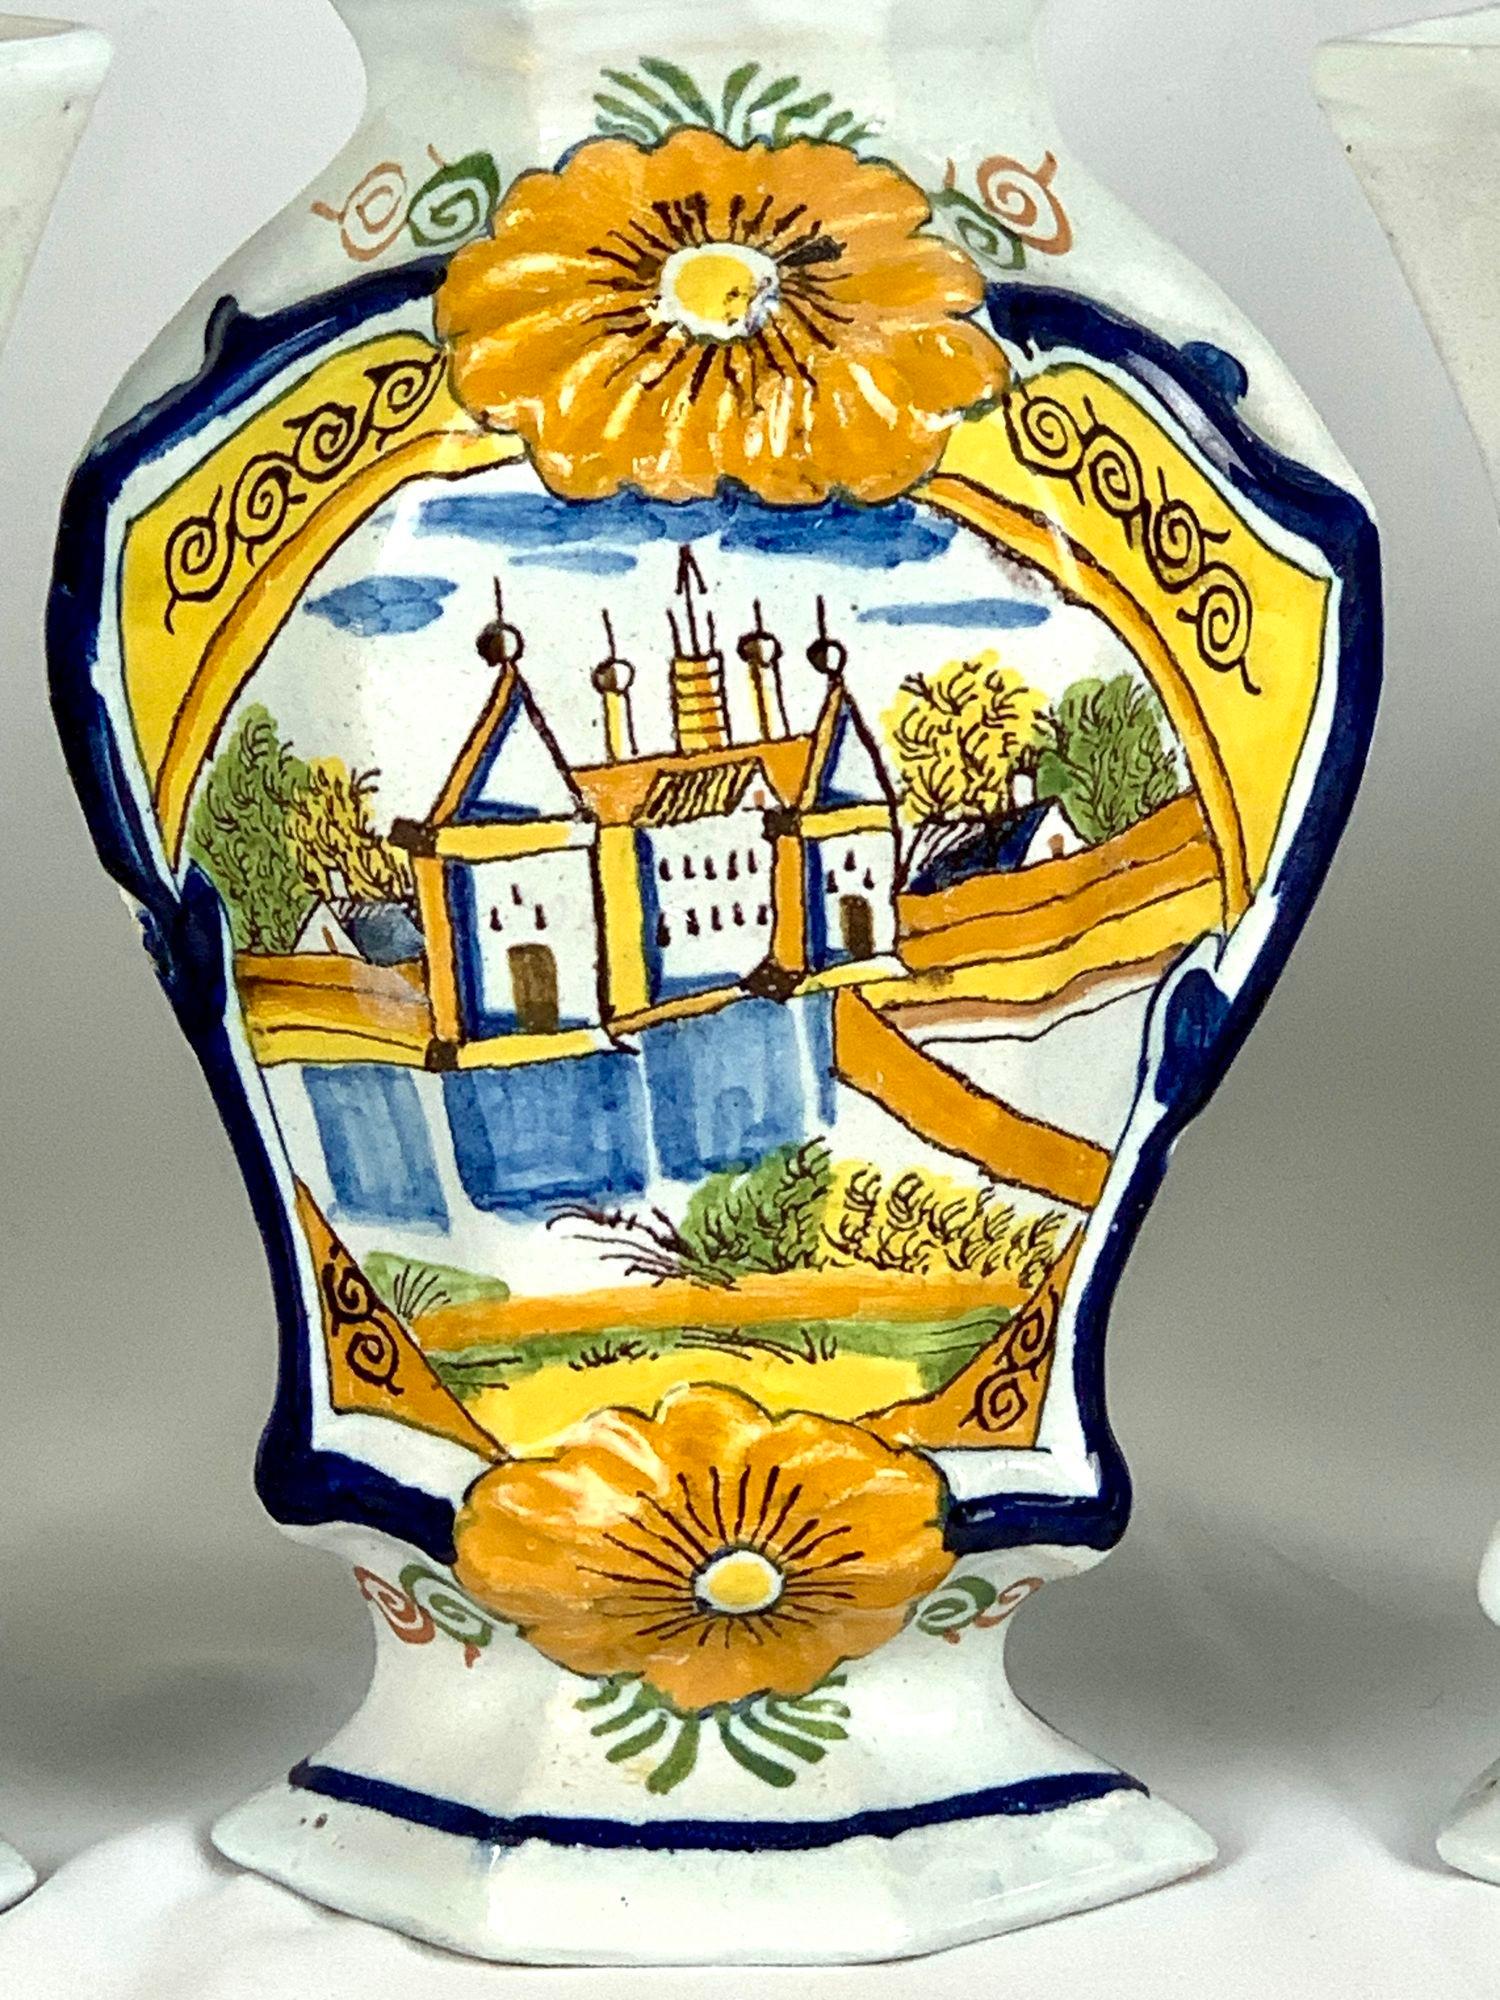 Diese holländische Delfter Mantelgarnitur besteht aus fünf Teilen: drei Deckelvasen und ein Paar flötenförmige Vasen.
Es wurde um 1780 in den Niederlanden hergestellt.
Das Design zeigt eine handgemalte, naive Szene eines Schlosses hinter einem mit